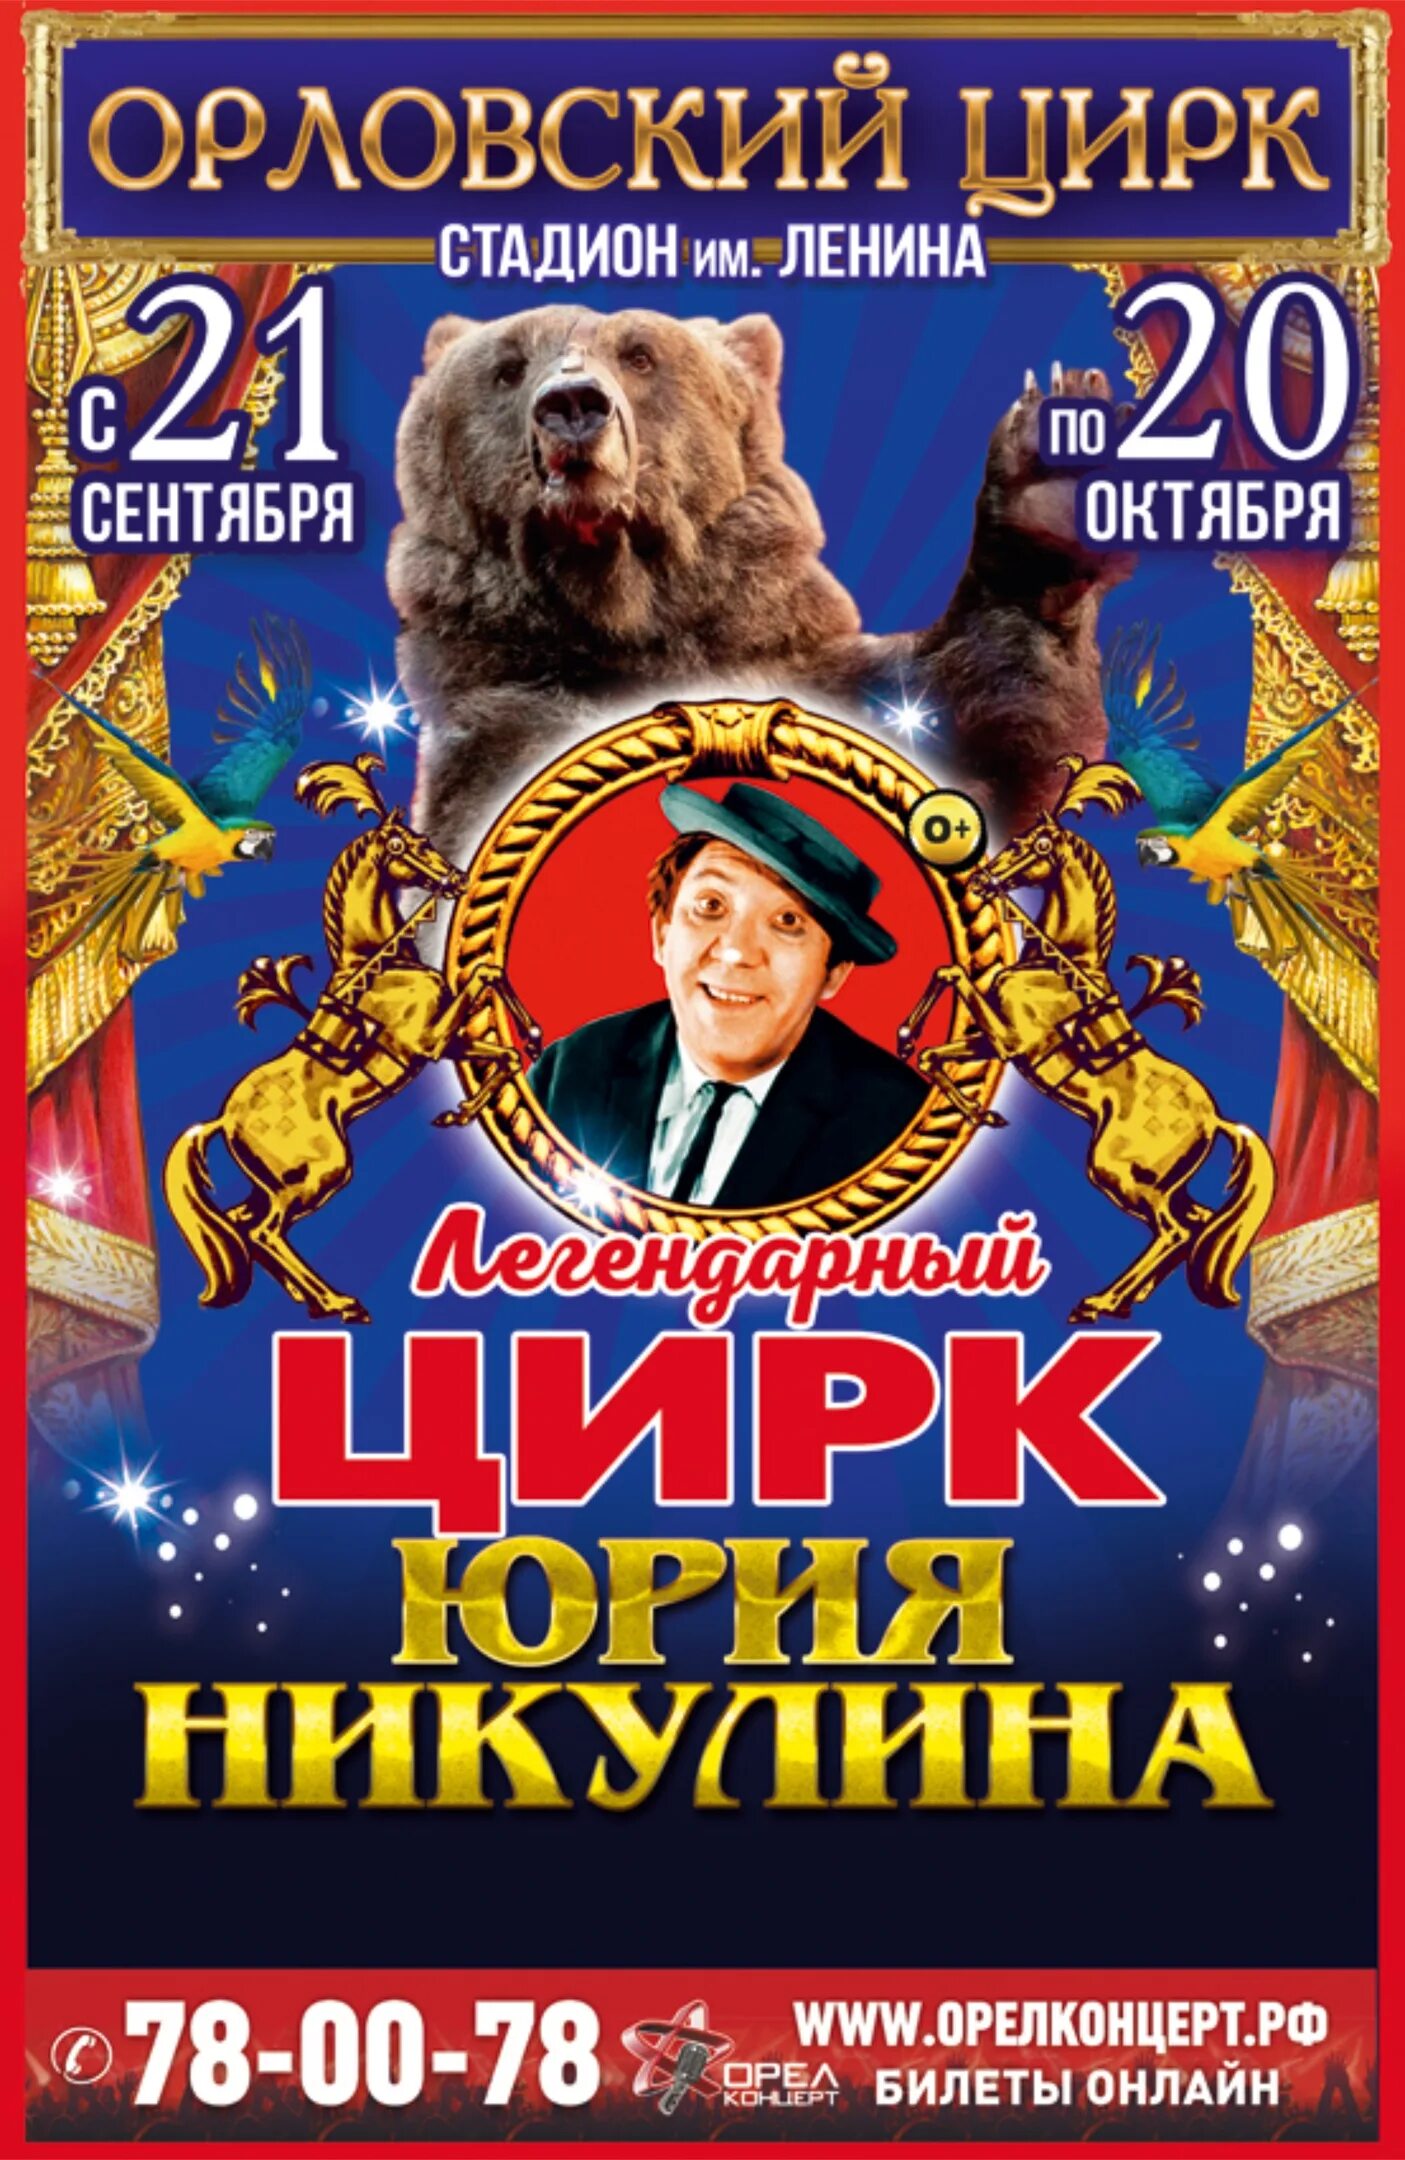 Легендарный цирк Юрия Никулина. Билет в цирк. Орловский цирк. Цирк в Орле.